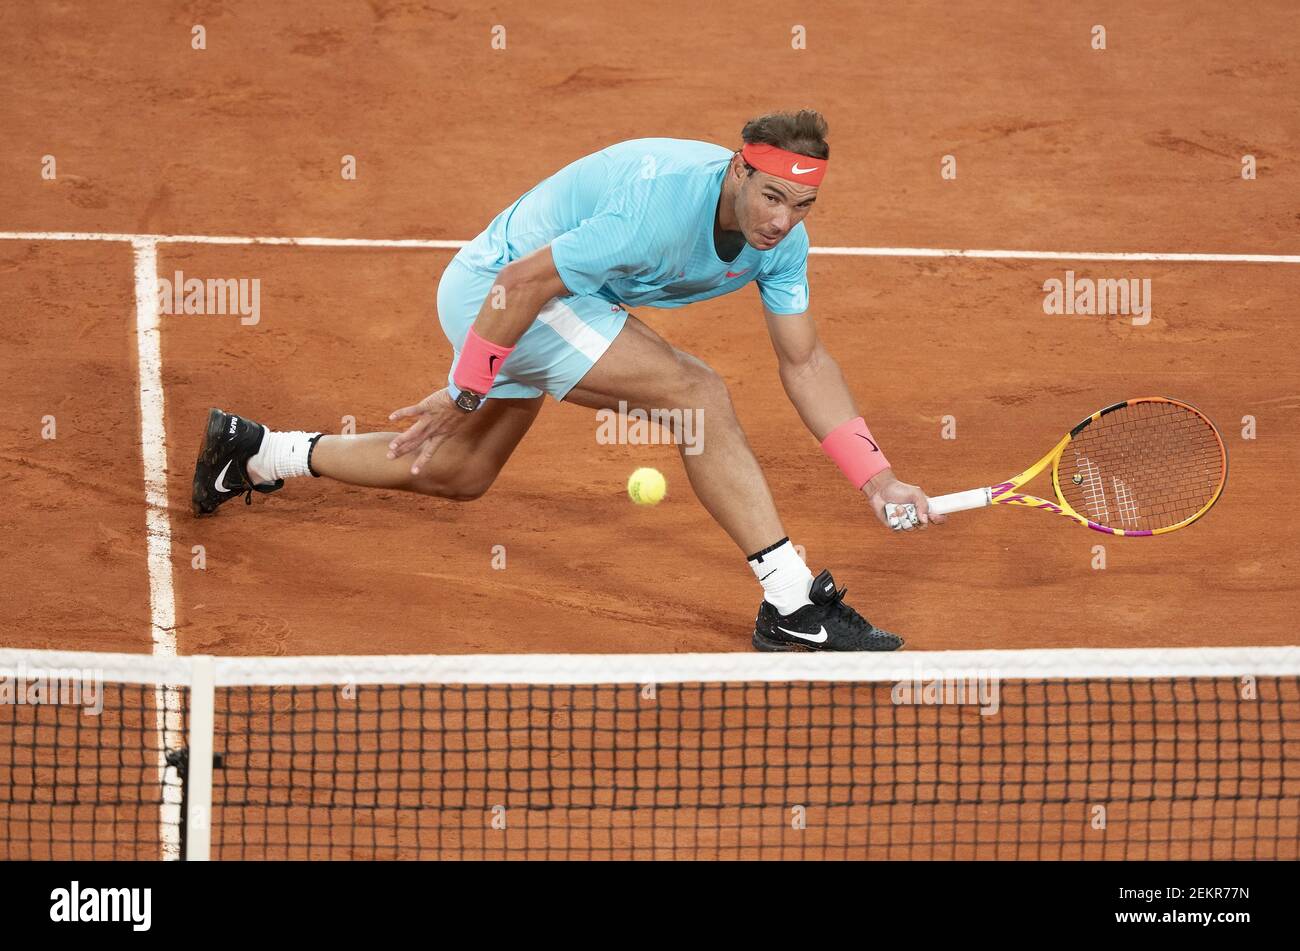 11 ottobre 2020; Parigi, Francia; Rafael Nadal (ESP) in azione durante la sua partita contro Novak Djokovic (SRB) il giorno 15 allo Stade Roland Garros. Credito obbligatorio: Susan Mullane-USA TODAY Sports/Sipa USA Foto Stock